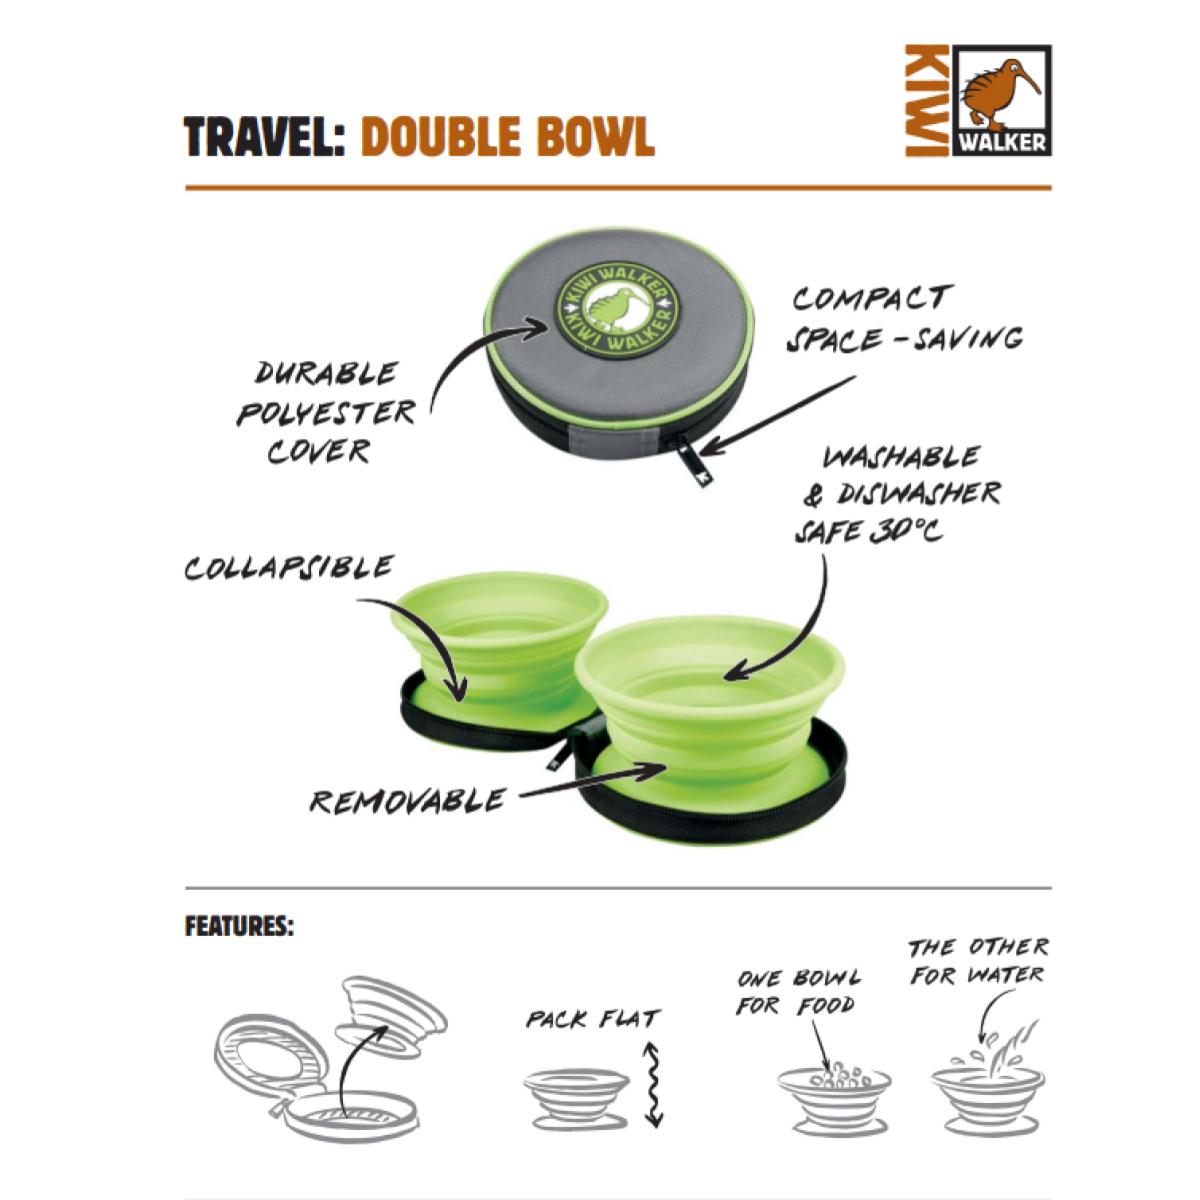 Ar Kiwi Walker bļodām jūsu ceļojums ar mājdzīvnieku būs viegls un patīkams. Travel Double Bowl ir nevis viena, bet divas lieliskas bļodiņas - 350 ml katra, kas ir kompakti salocītas nelielā iepakojumā, kas vienmēr var būt pa rokai! 